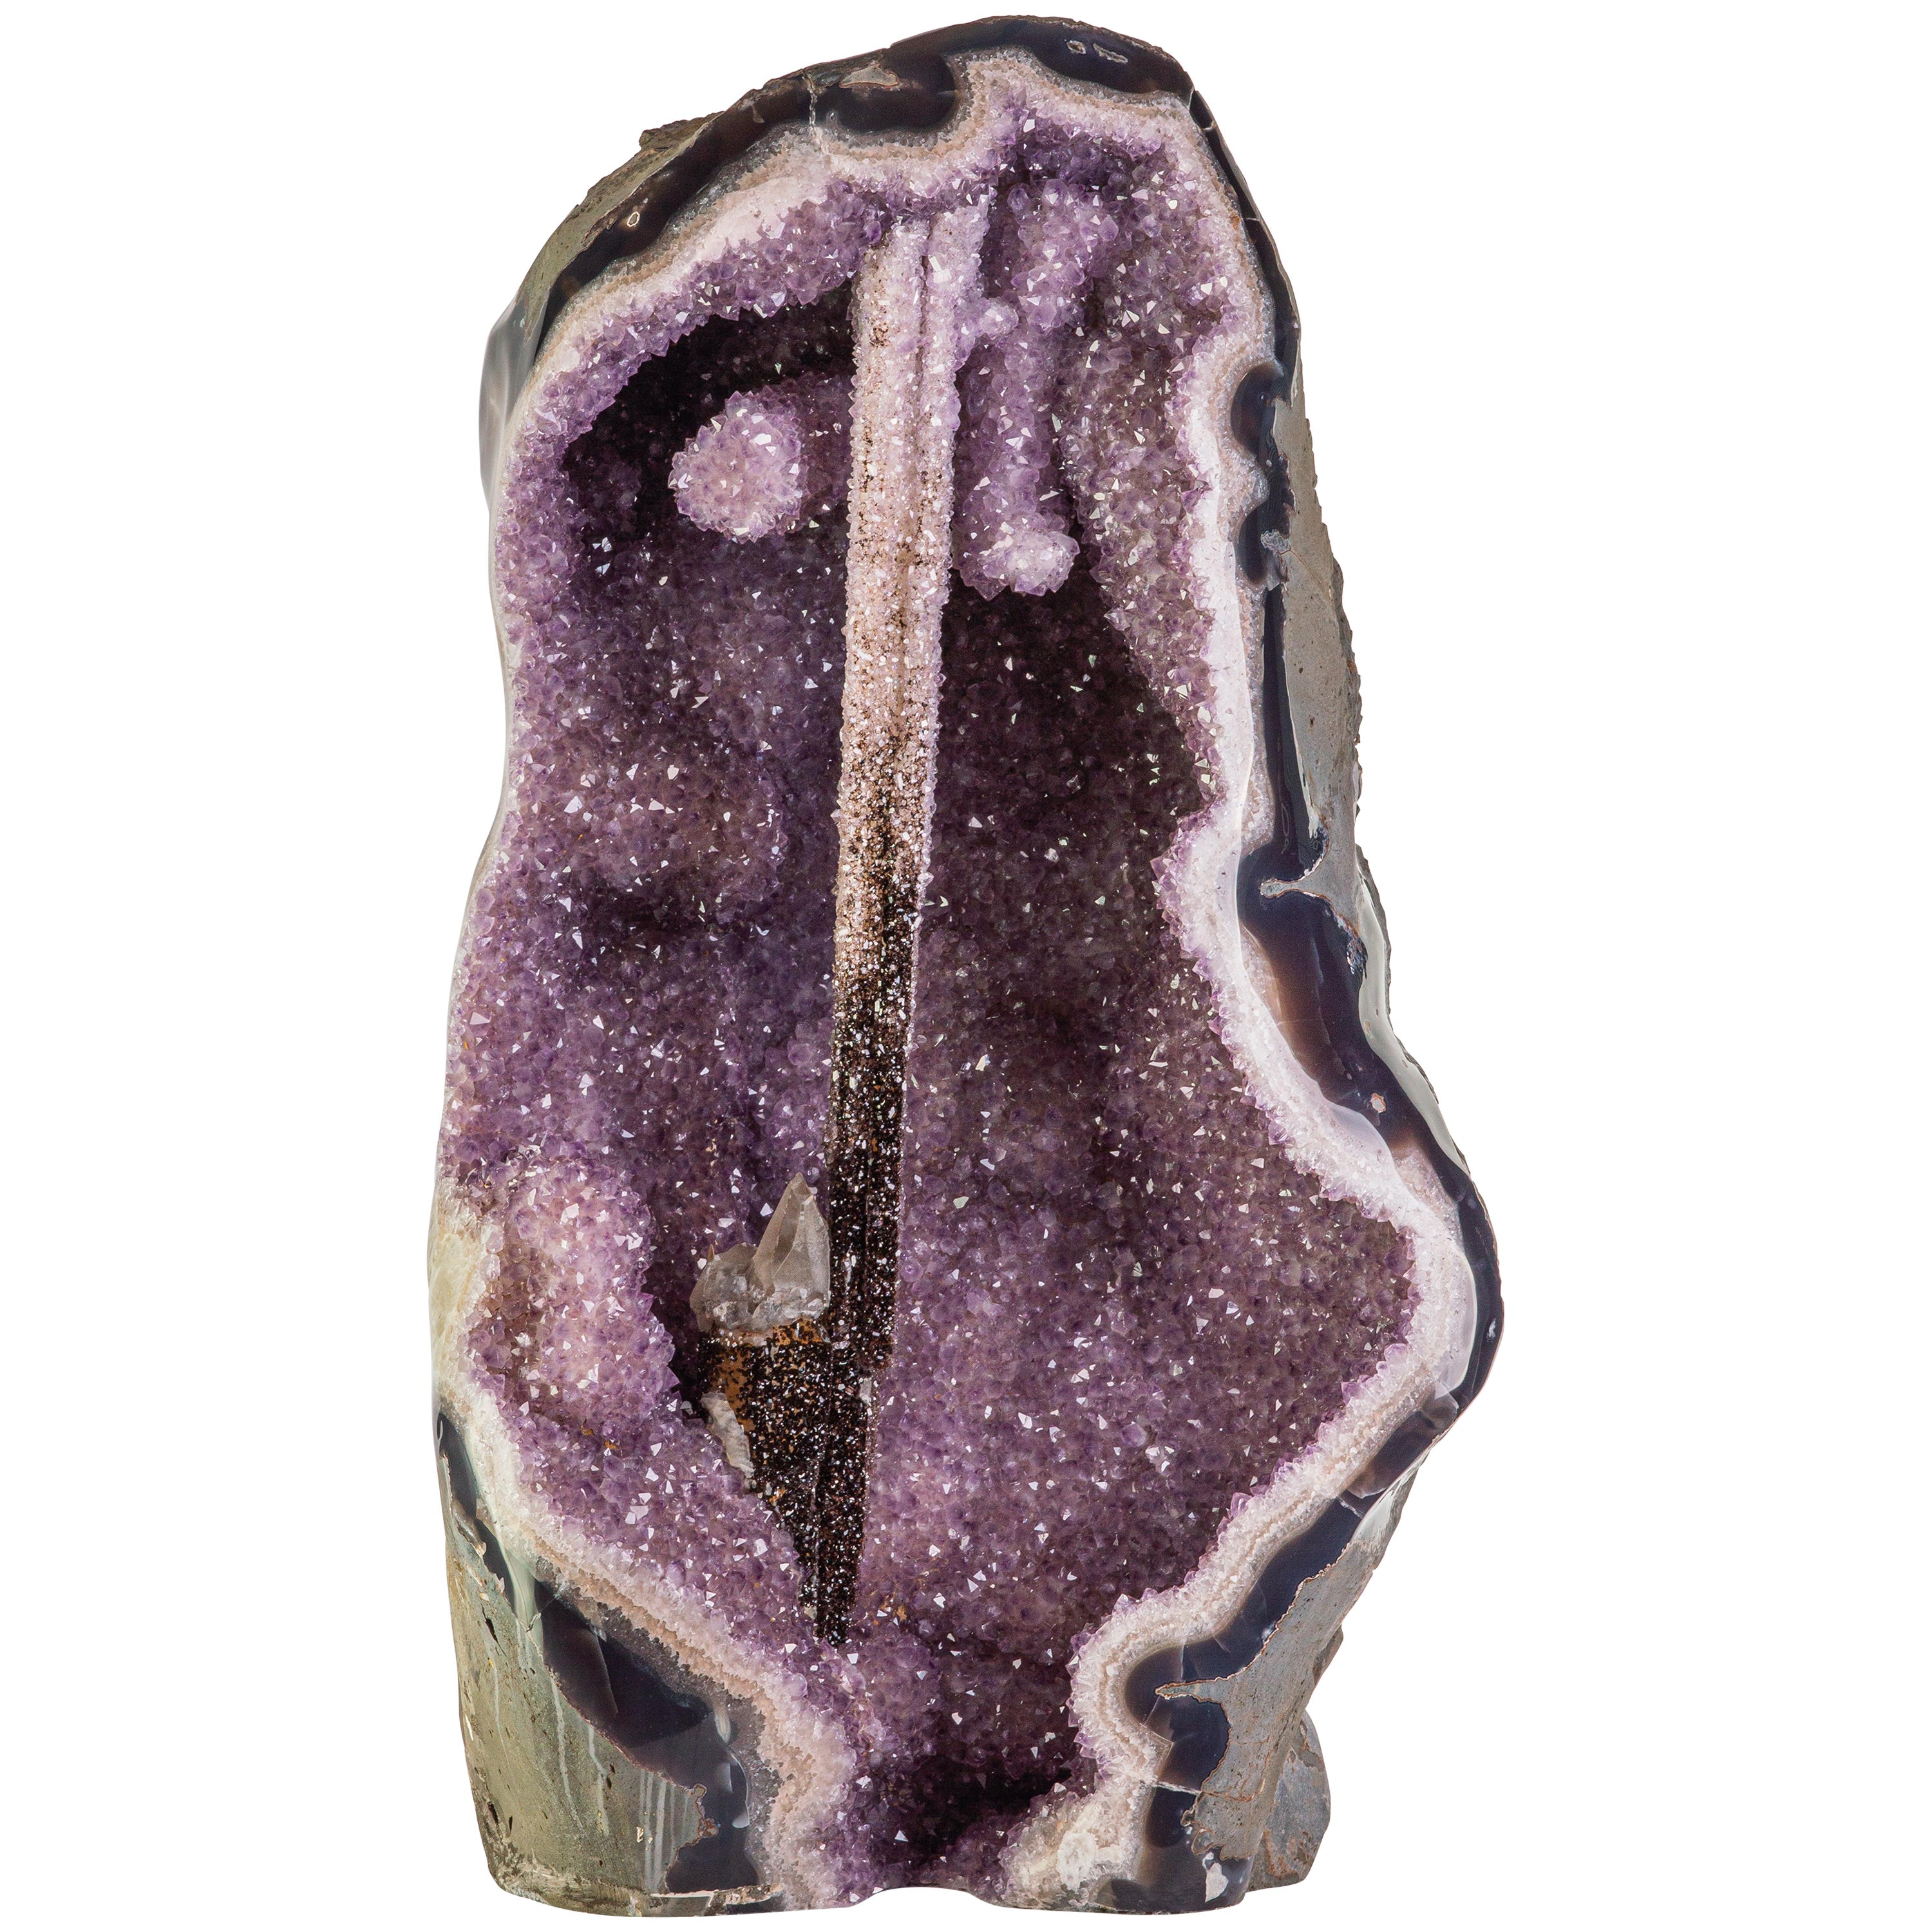 Exceptional “Excalibur” Amethyst Formation, Calcite, Agate, Quartz